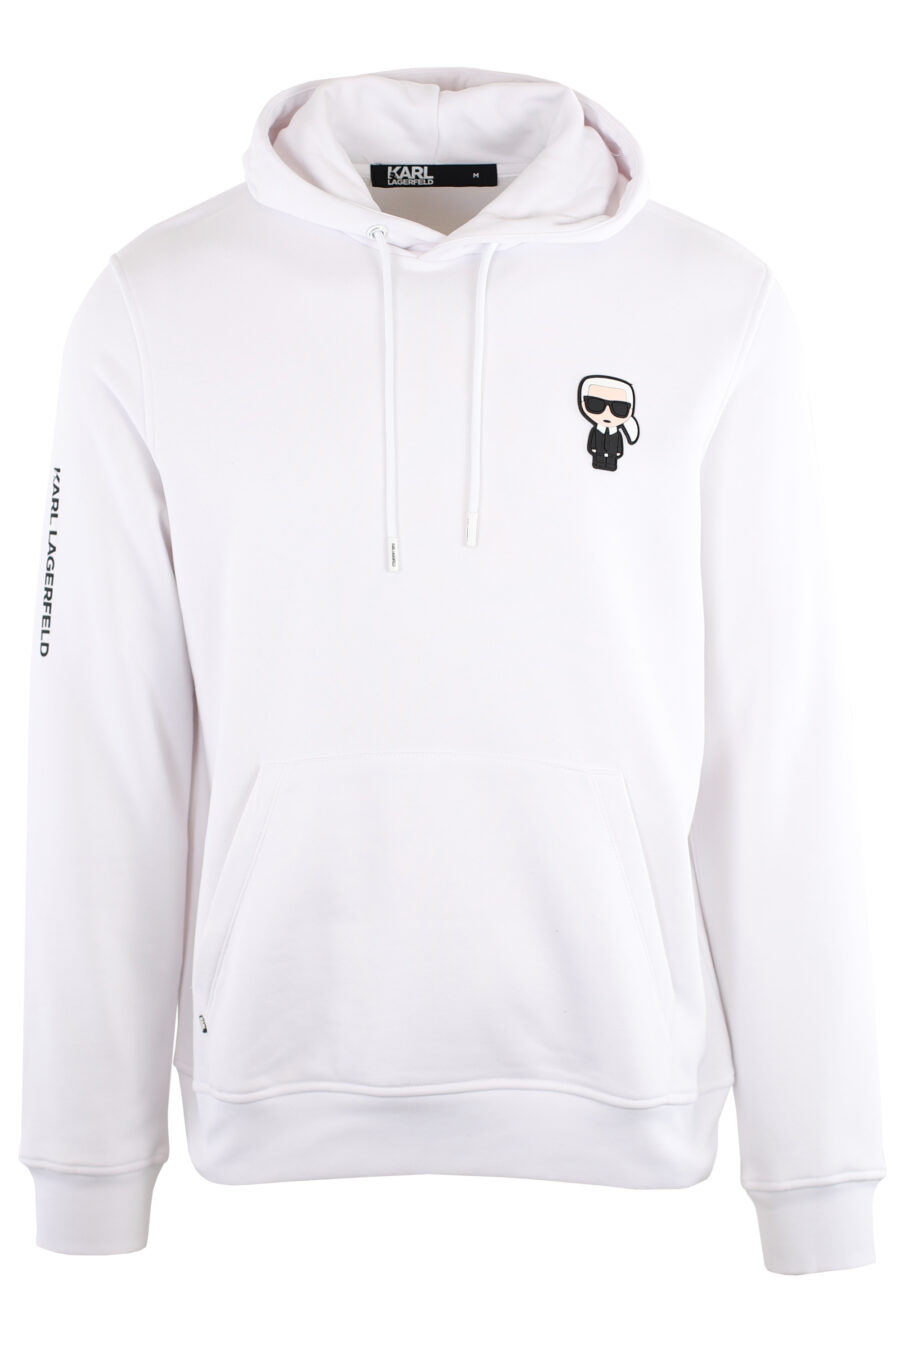 White sweatshirt with hood and logo "ikonik" small - IMG 7458